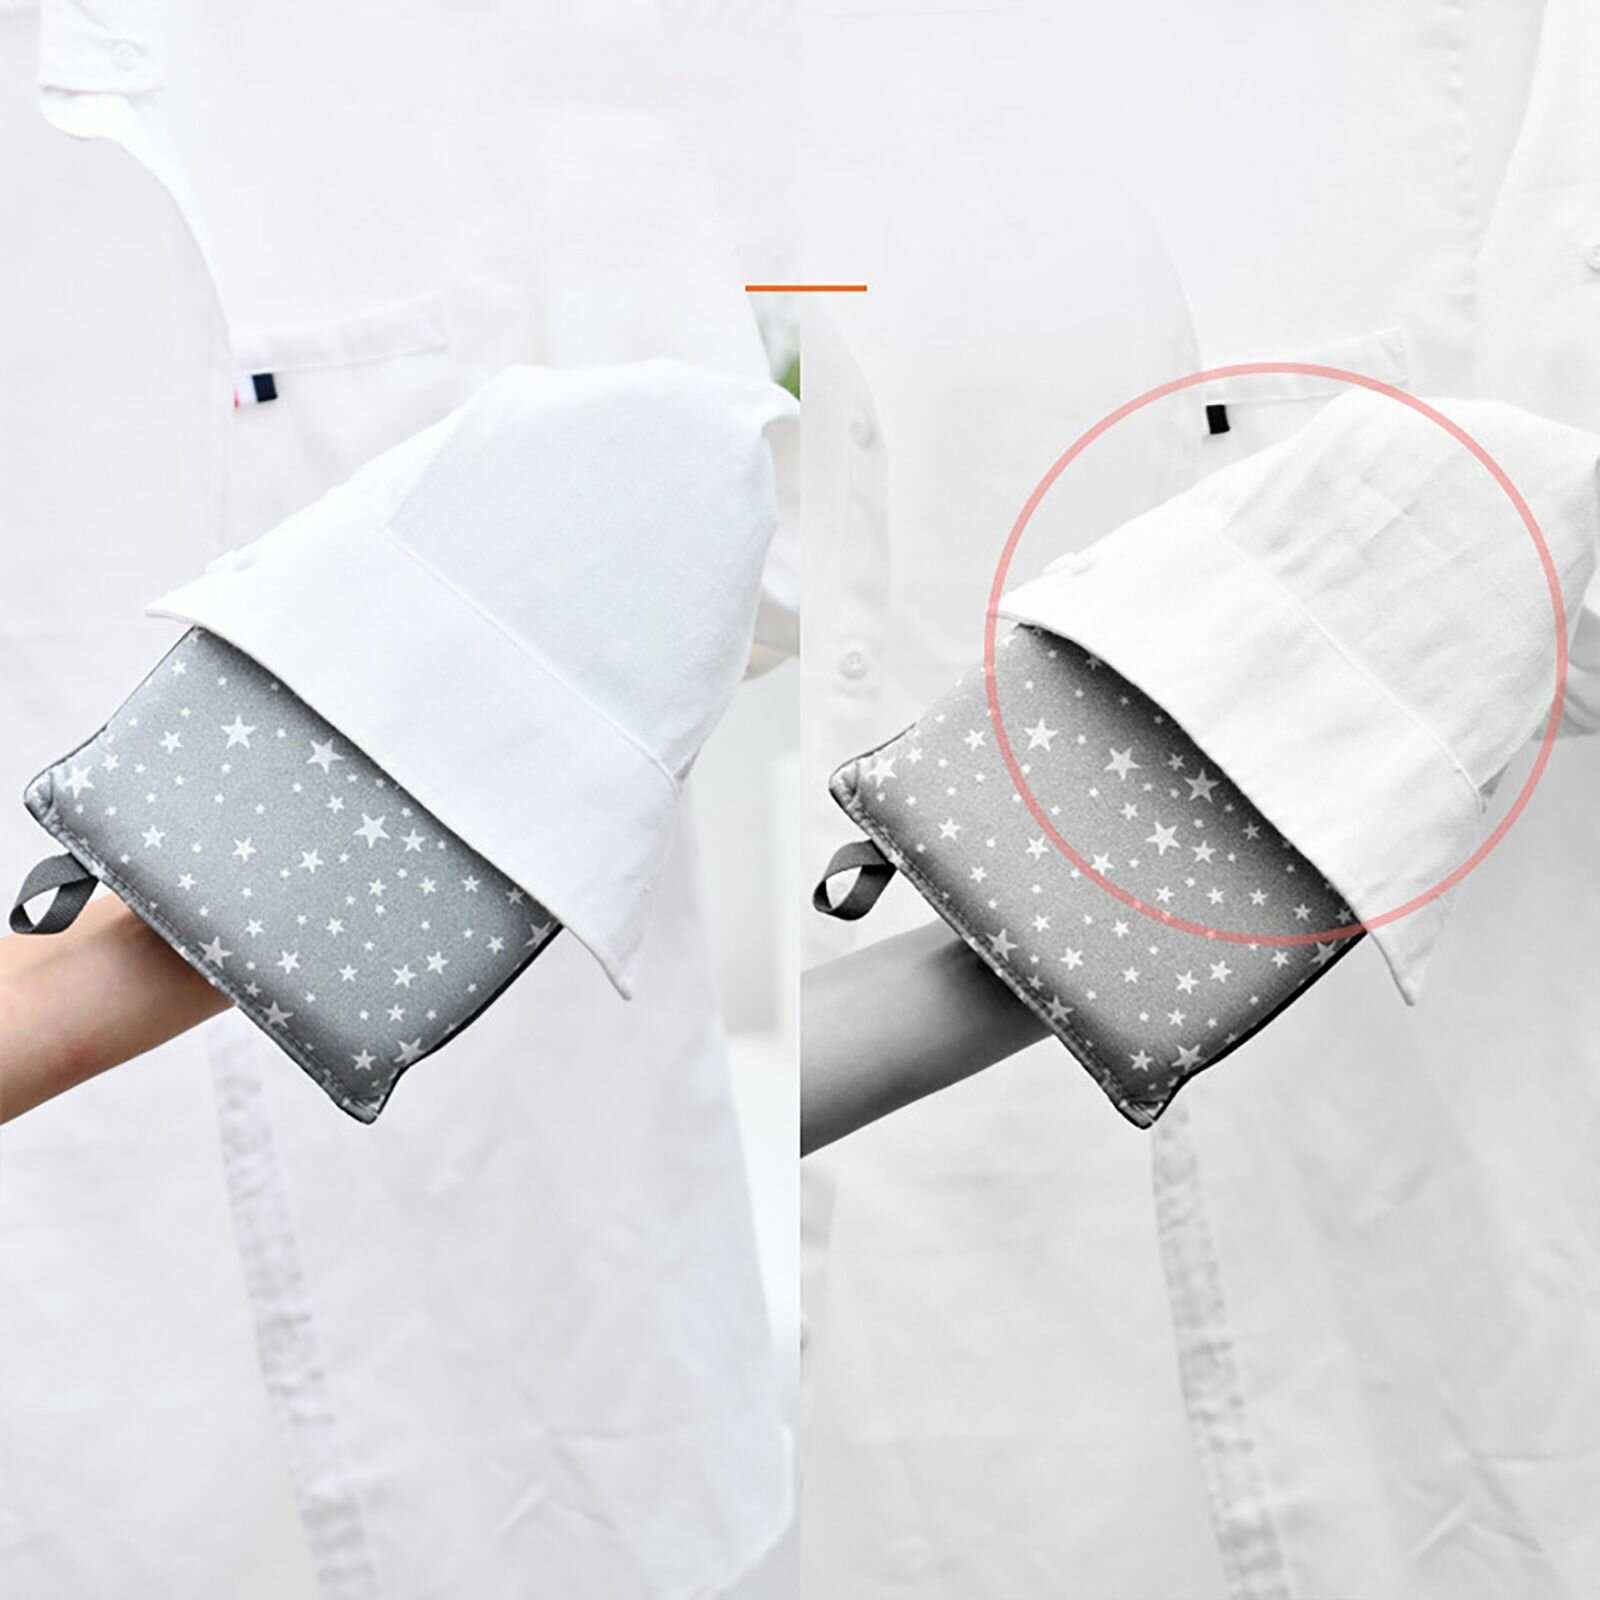 Варежка для отпаривания и глажки / досочка рукавица для отпаривателя и утюга, цвет серый со звездами - фотография № 5